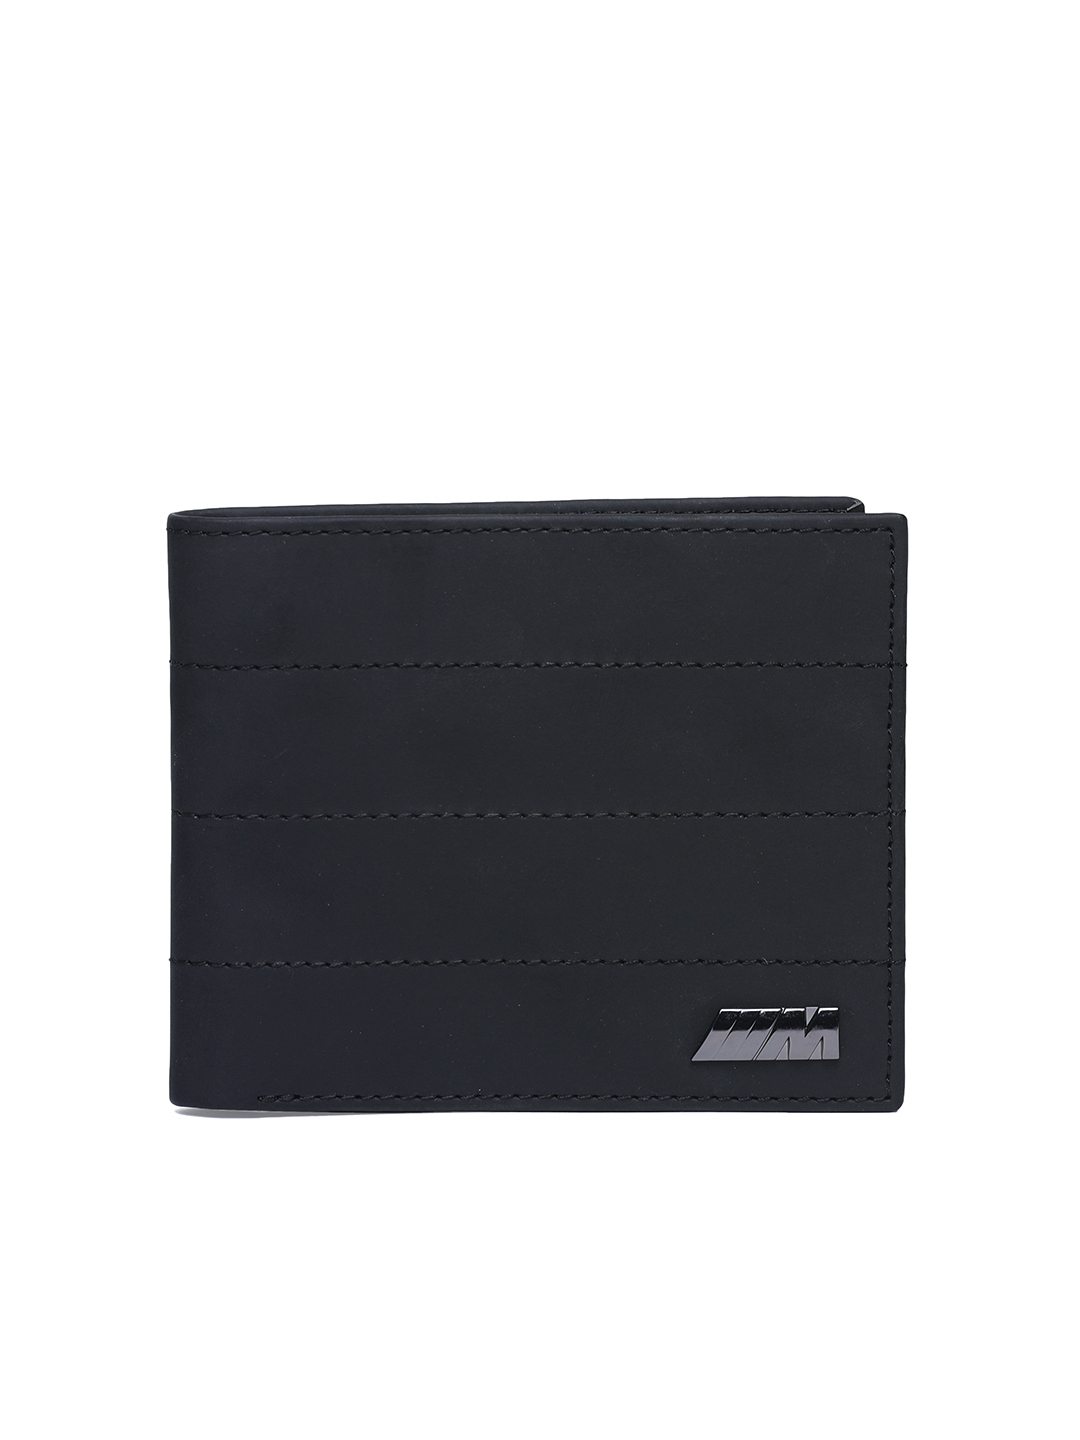 Buy Puma Men Black Solid Two Fold Wallet - Wallets for Men 2354886 | Myntra